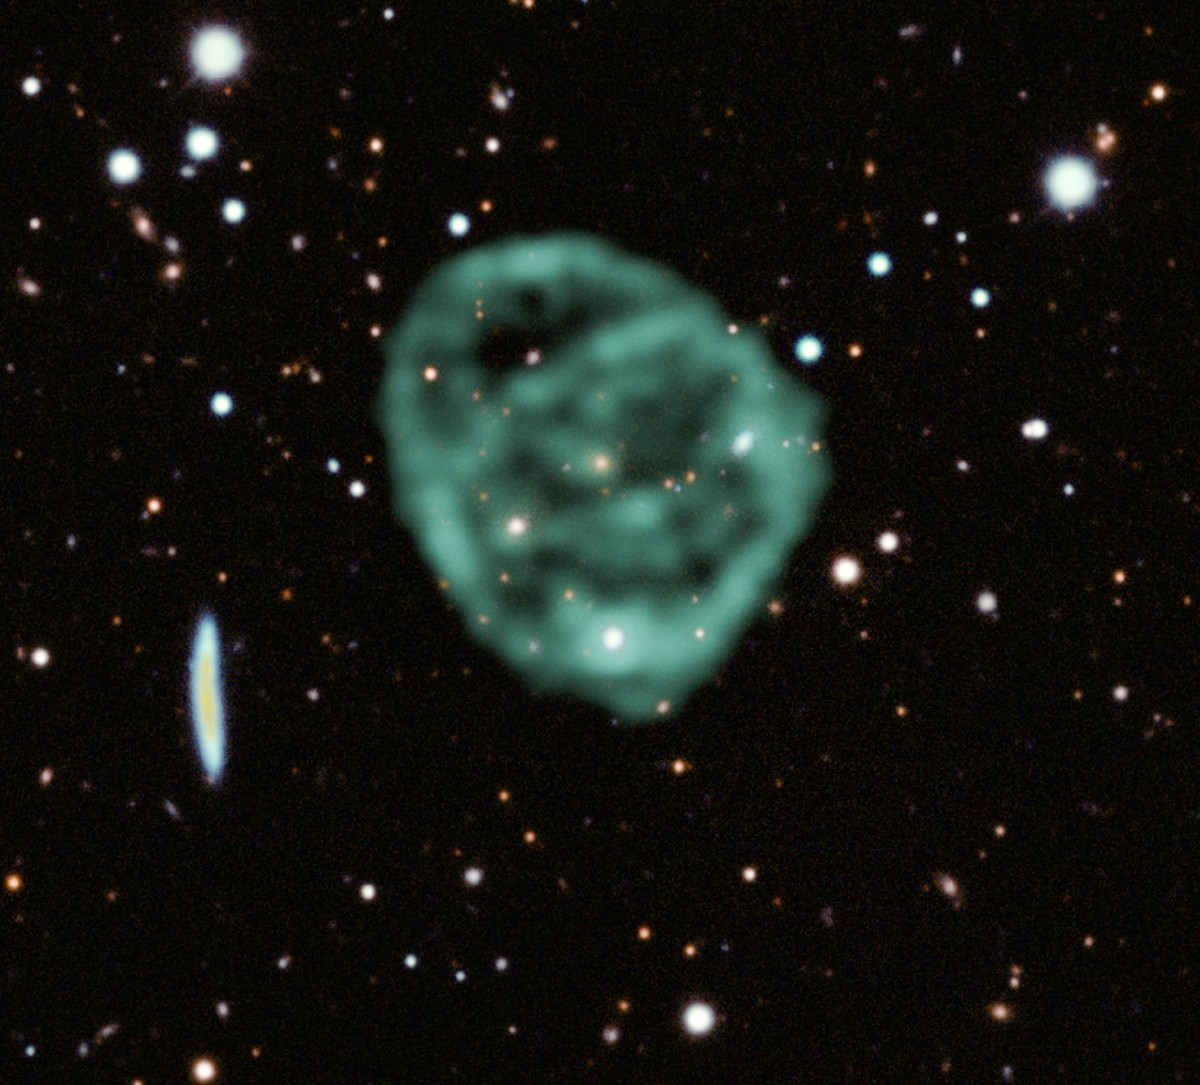 Imagen de ‘círculos extraños’ en una galaxia distante muestra una señal de radio que podría estar asociada con agujeros negros |  saber